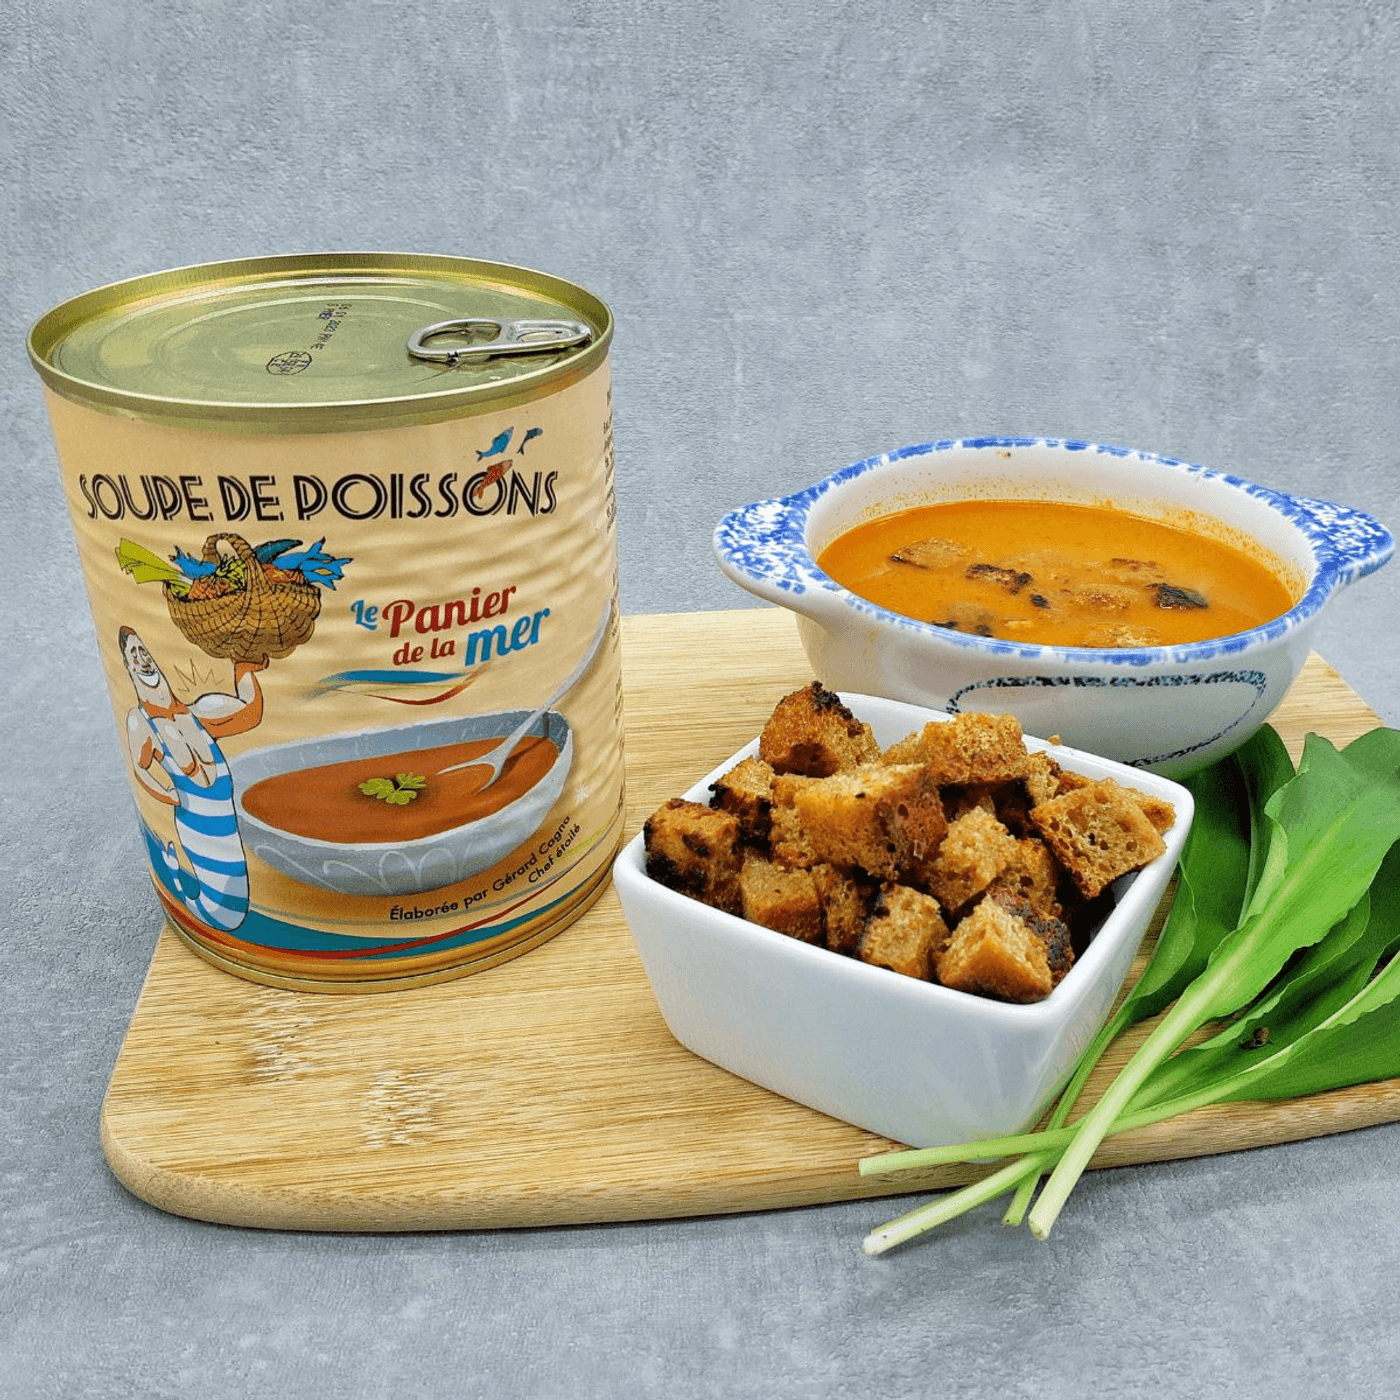 image de la boite de conserve contenant la soupe de poisson et un bol de soupe accompagné de croûtons